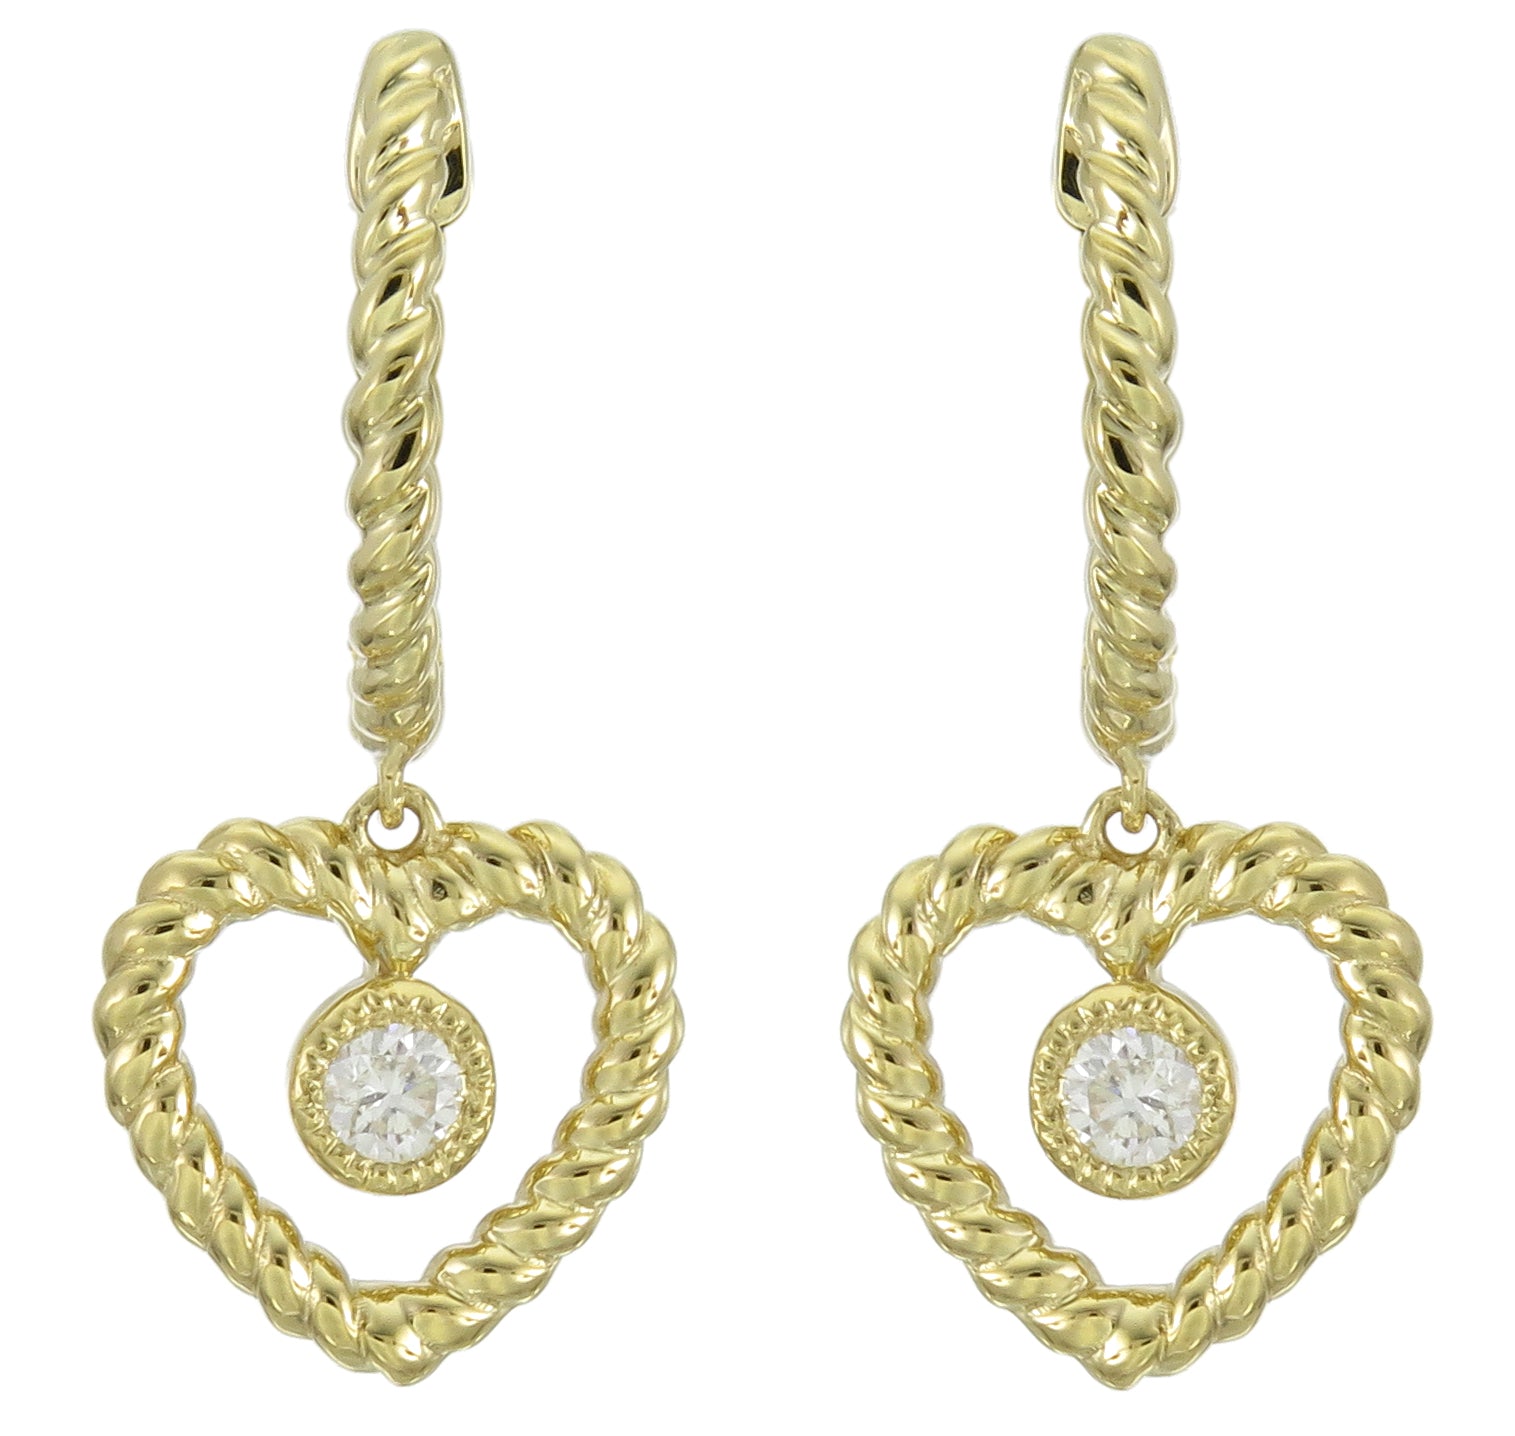 0.08ct tw Heart Shaped Open Heart Twisted Rope Design Diamond Dangling Earrings